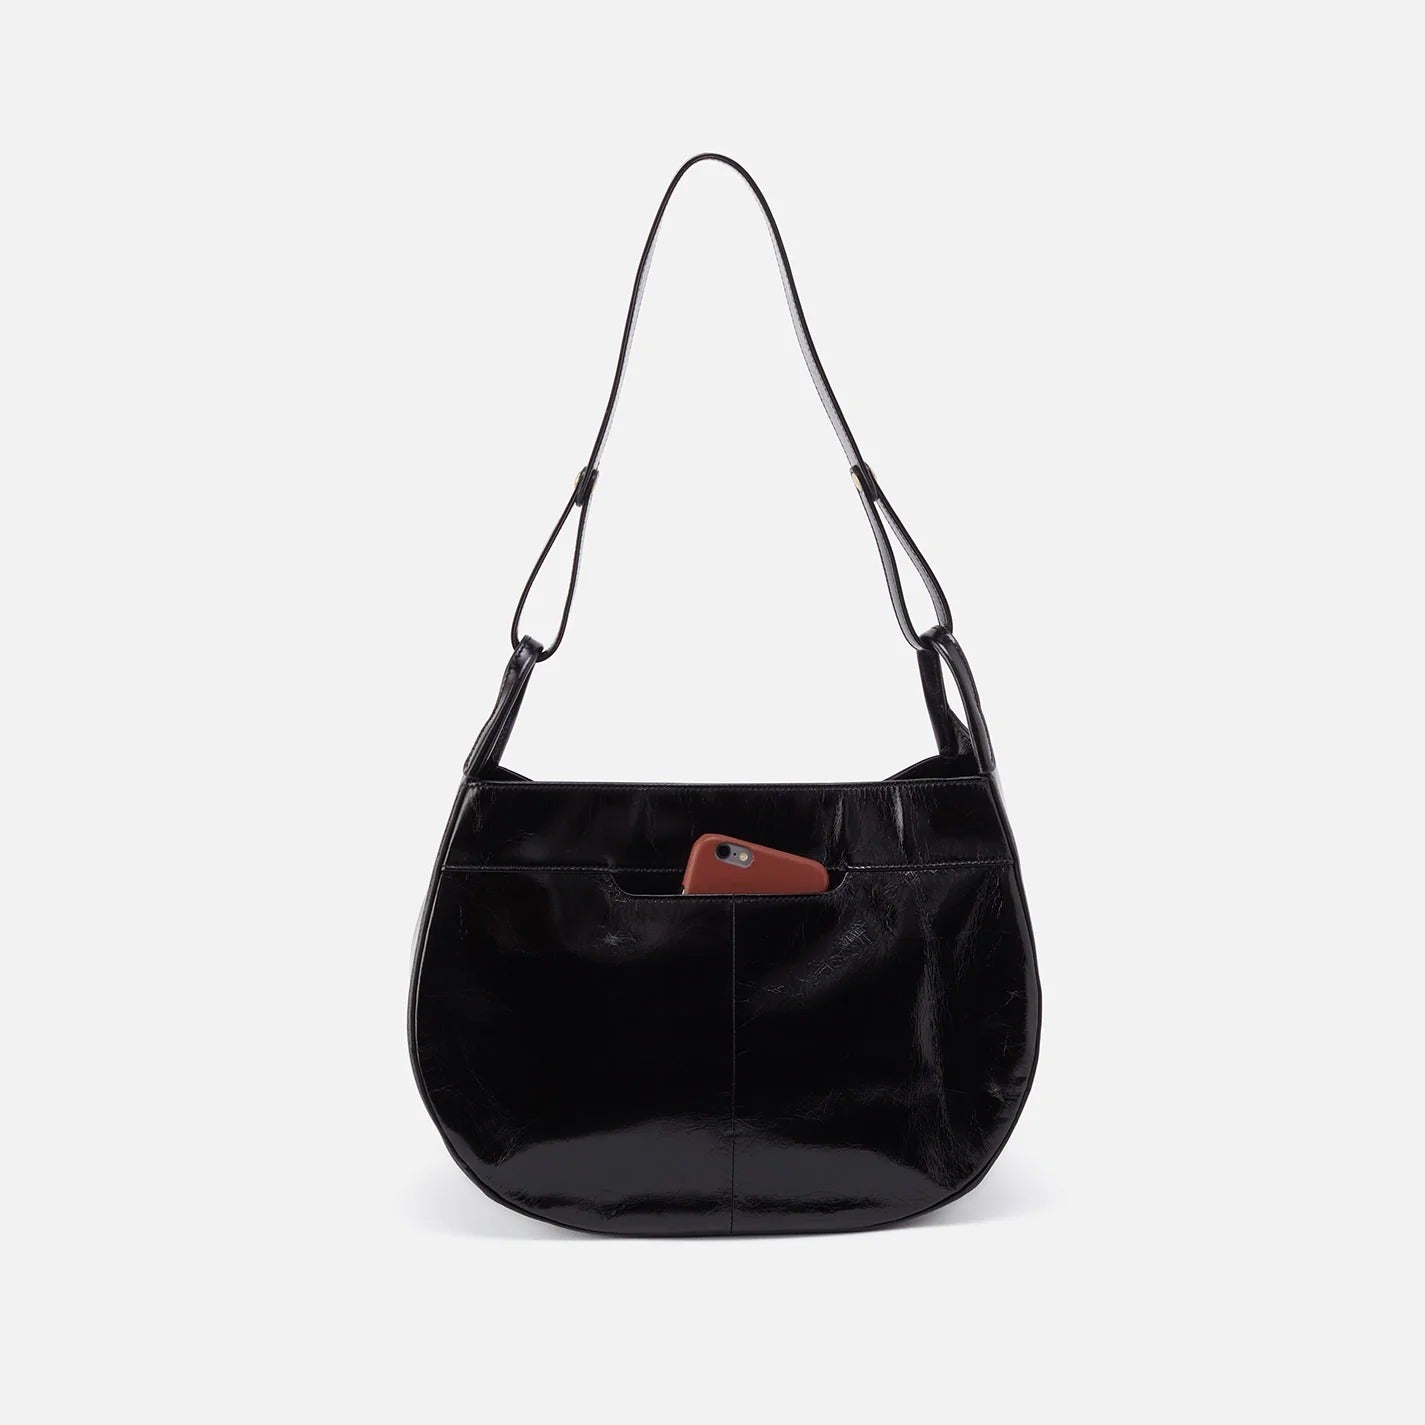 Arla Shoulder Bag Black